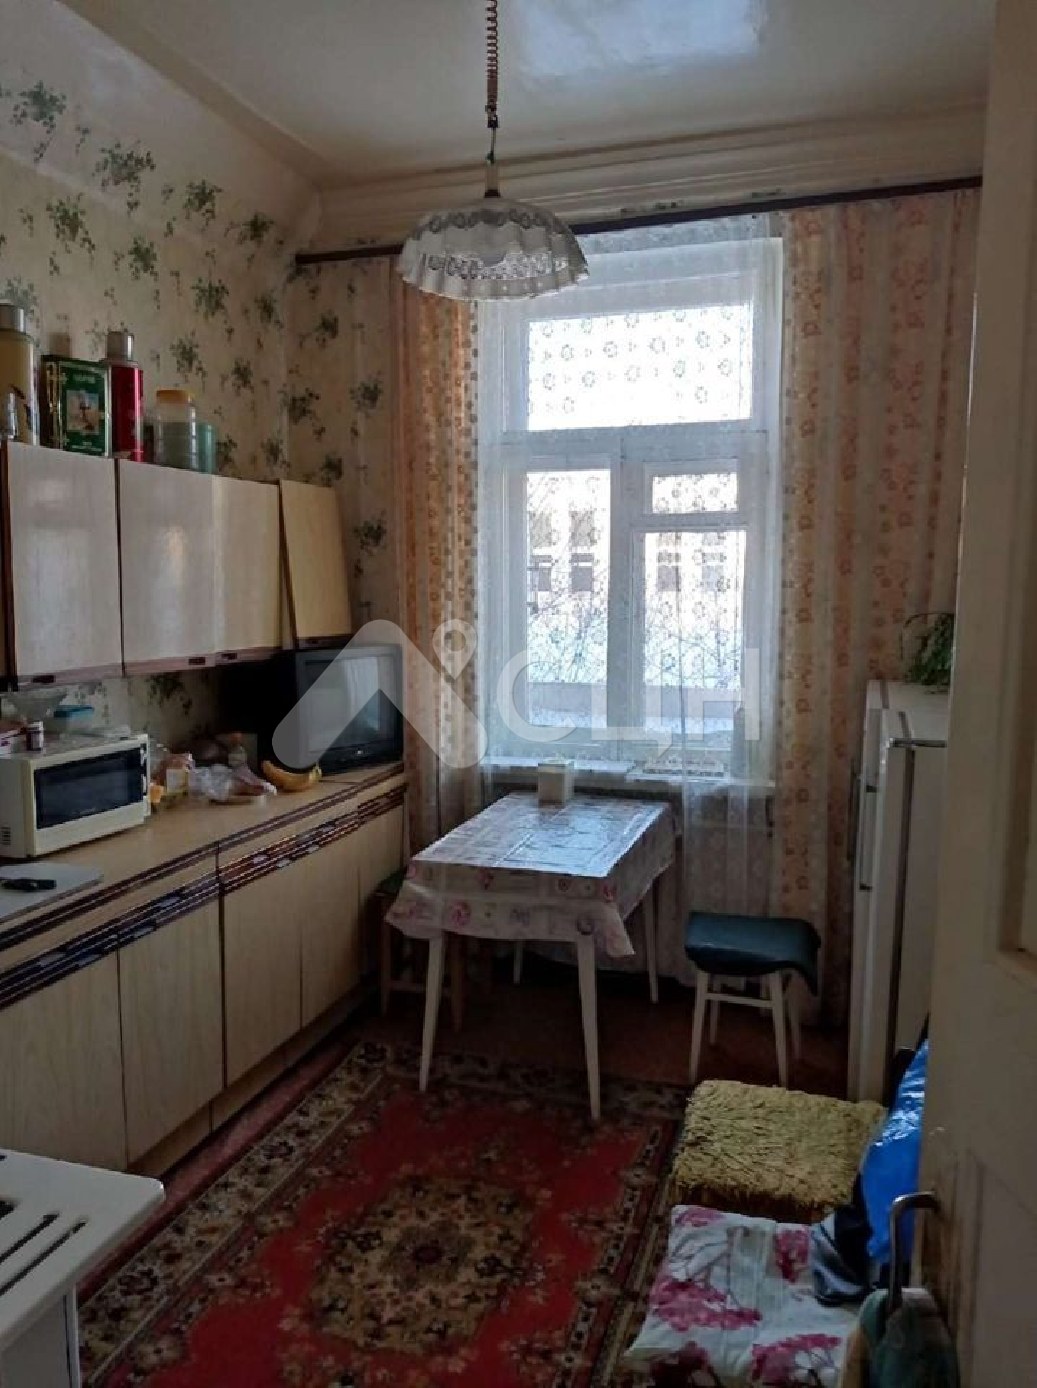 барахолка саров
: Г. Саров, улица Ушакова, 18, 2-комн квартира, этаж 2 из 3, продажа.